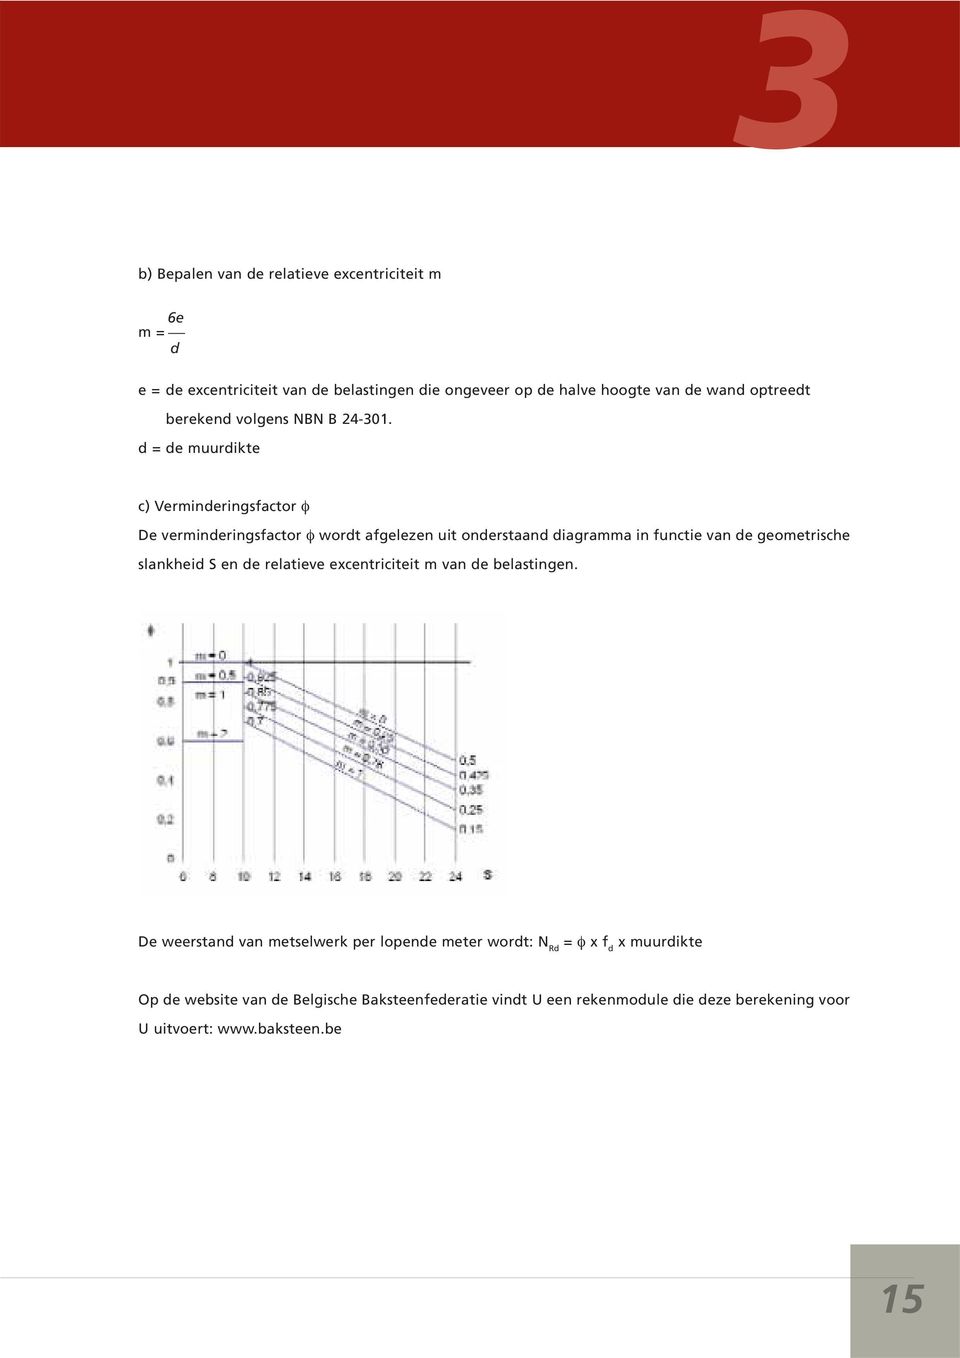 d = de muurdikte c) Verminderingsfactor φ De verminderingsfactor φ wordt afgelezen uit onderstaand diagramma in functie van de geometrische